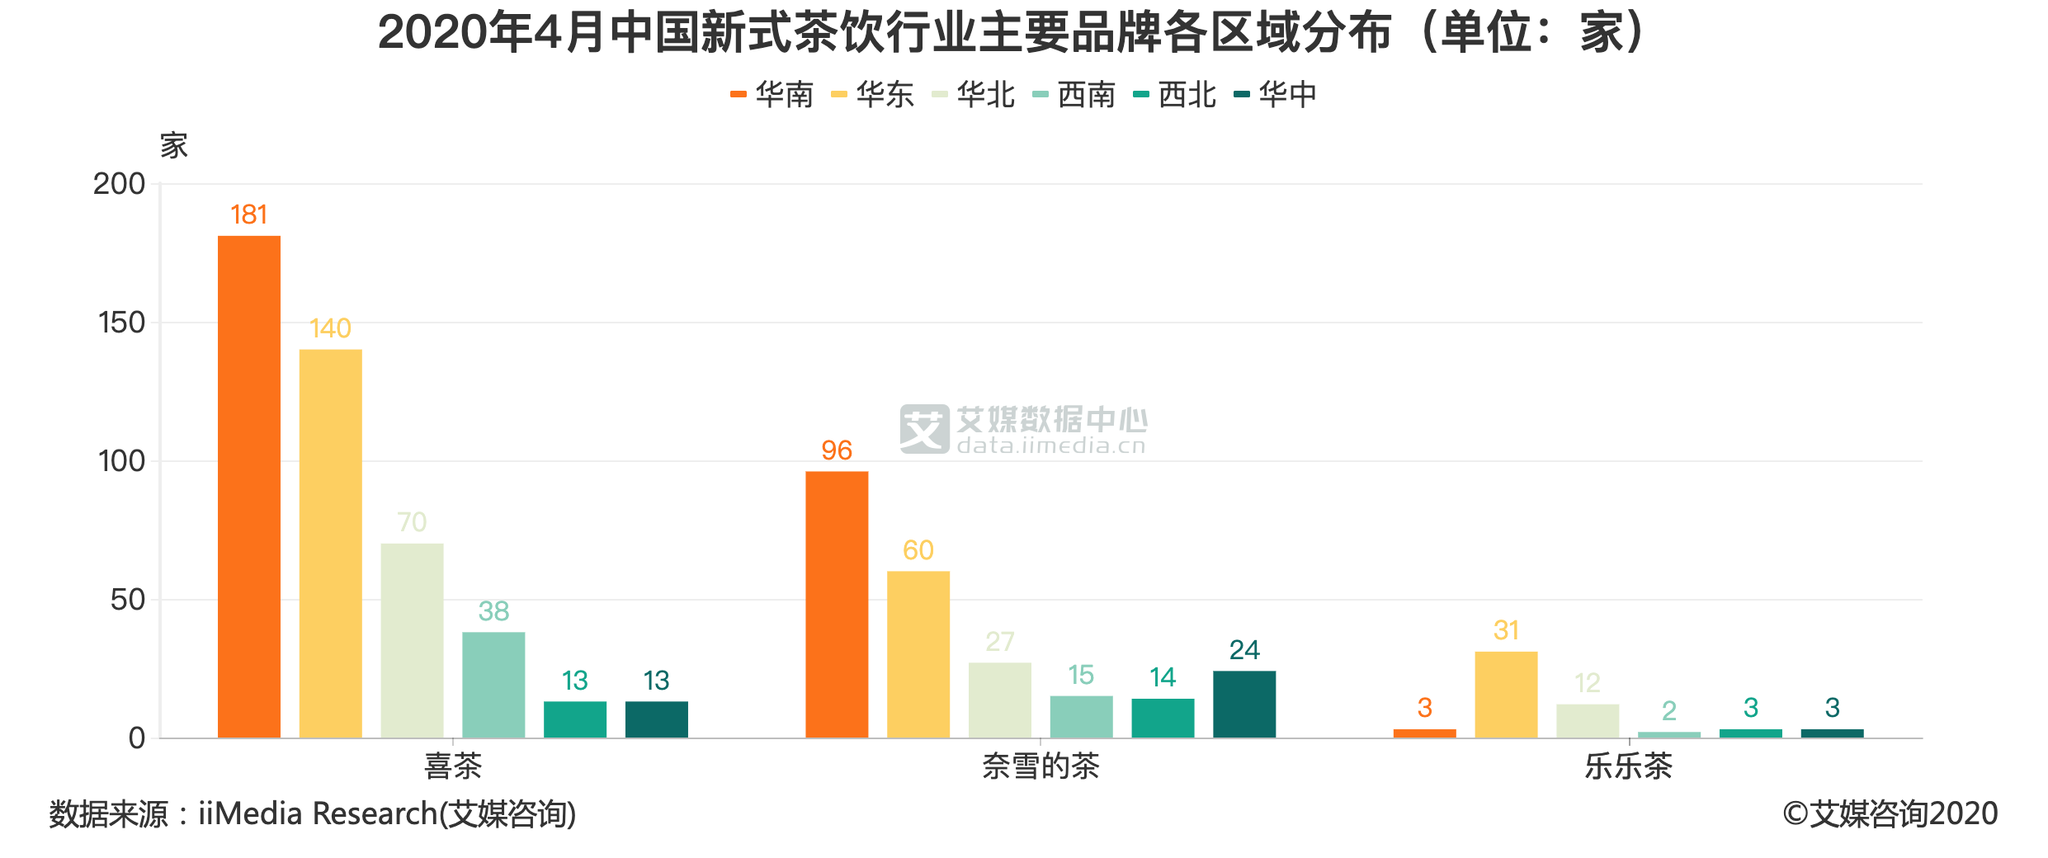 茶饮行业数据分析2020年4月中国华南地区共有181家喜茶门店